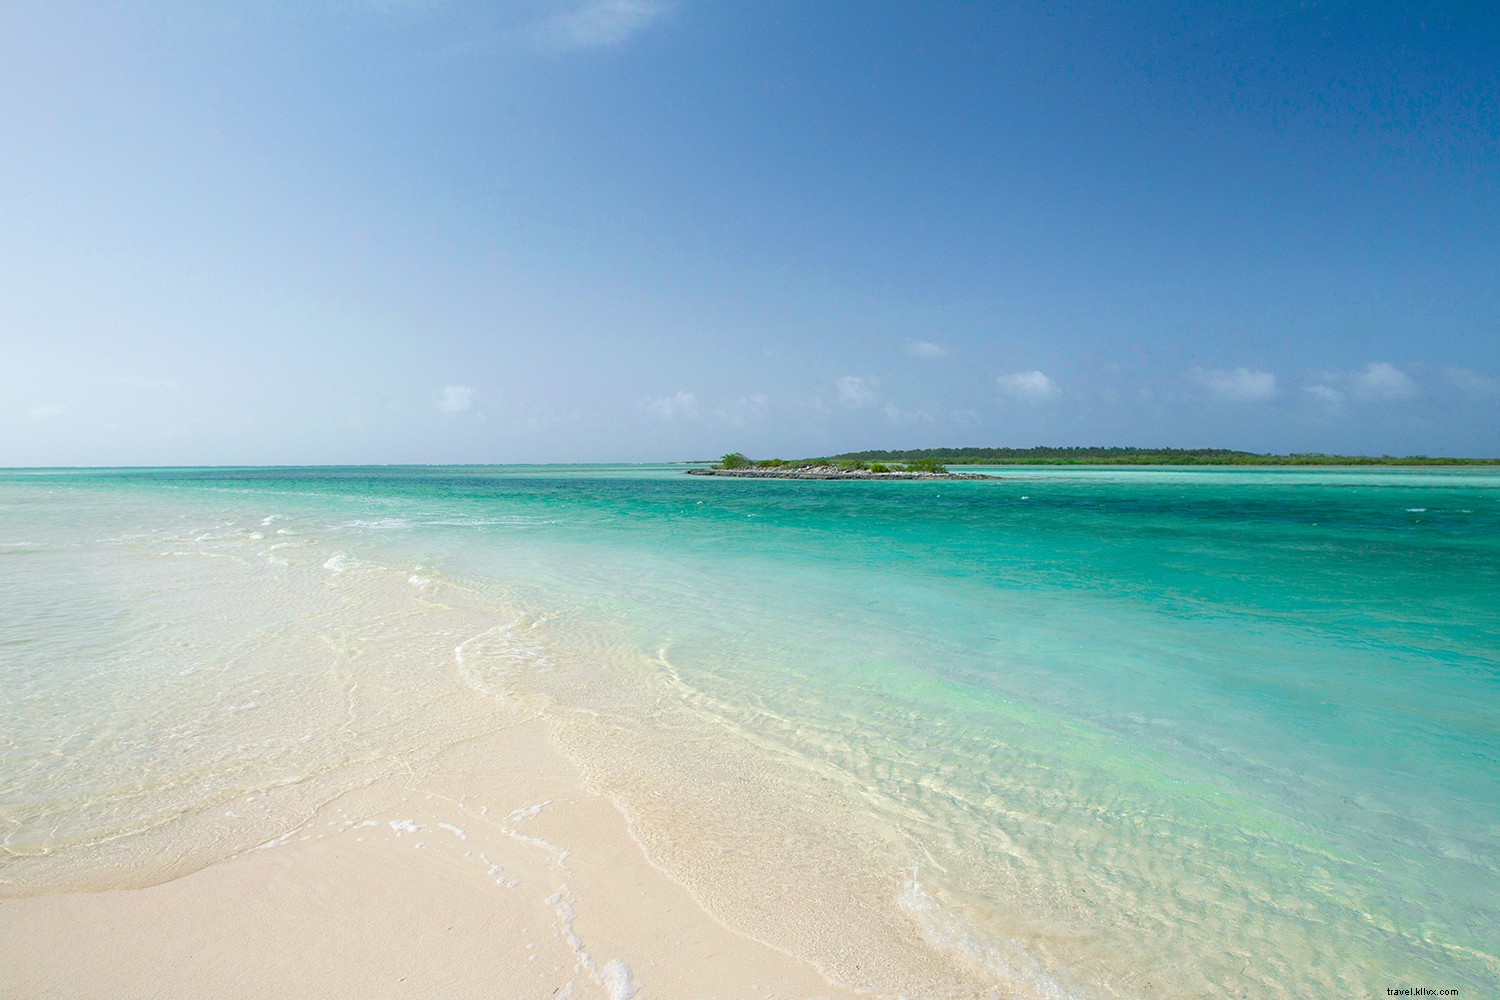 8 das nossas razões favoritas para fugir para as Bahamas 